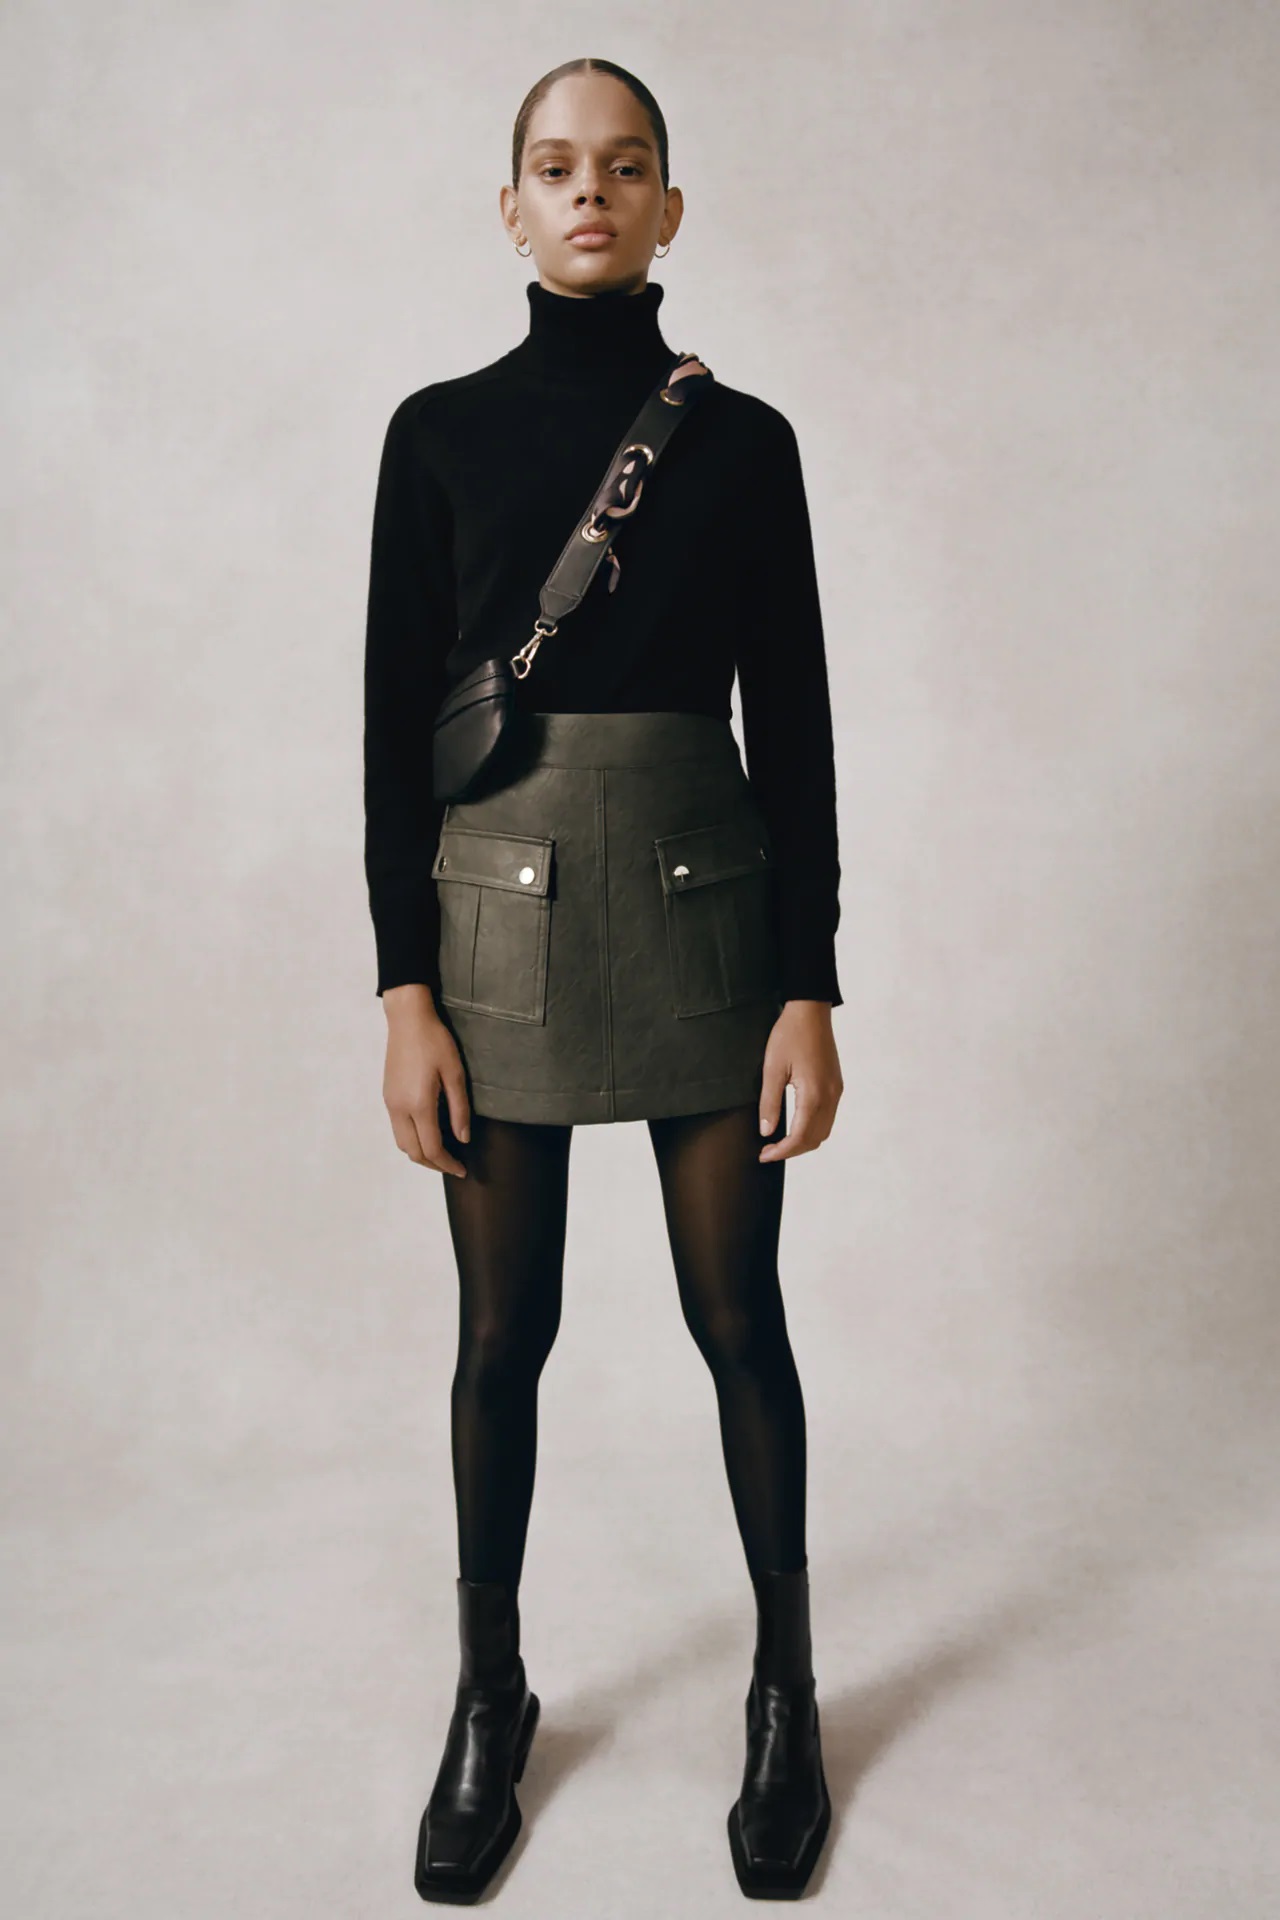 derivación mezcla Los invitados Zara tiene la falda pantalón de cuero más cómoda de este otoño-invierno |  Moda